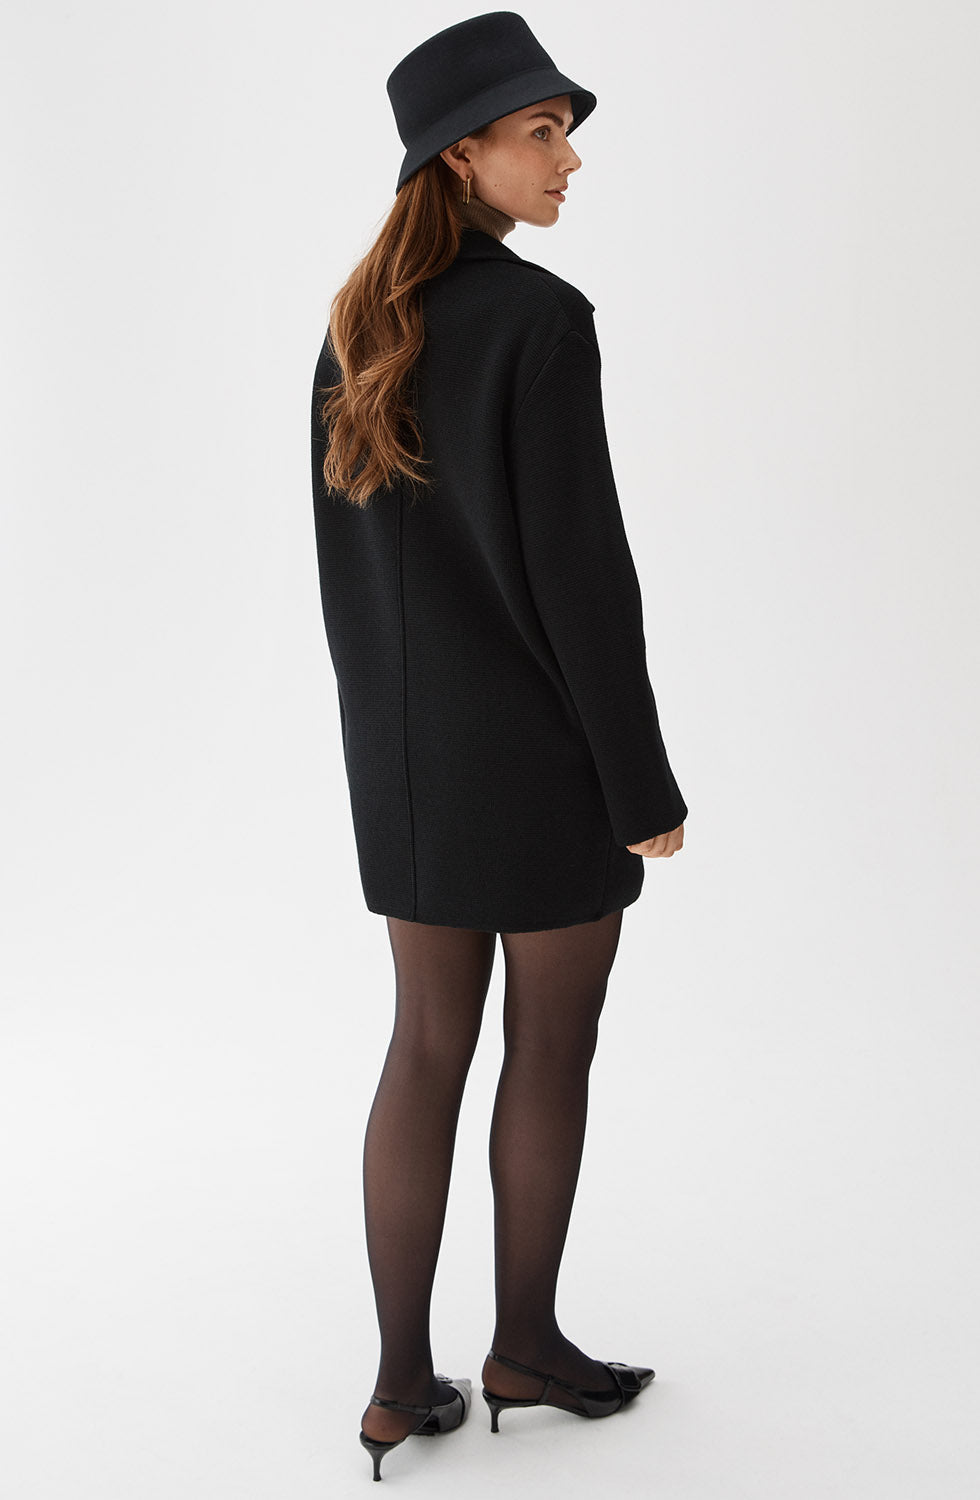 Busnel Romaine Coat Black